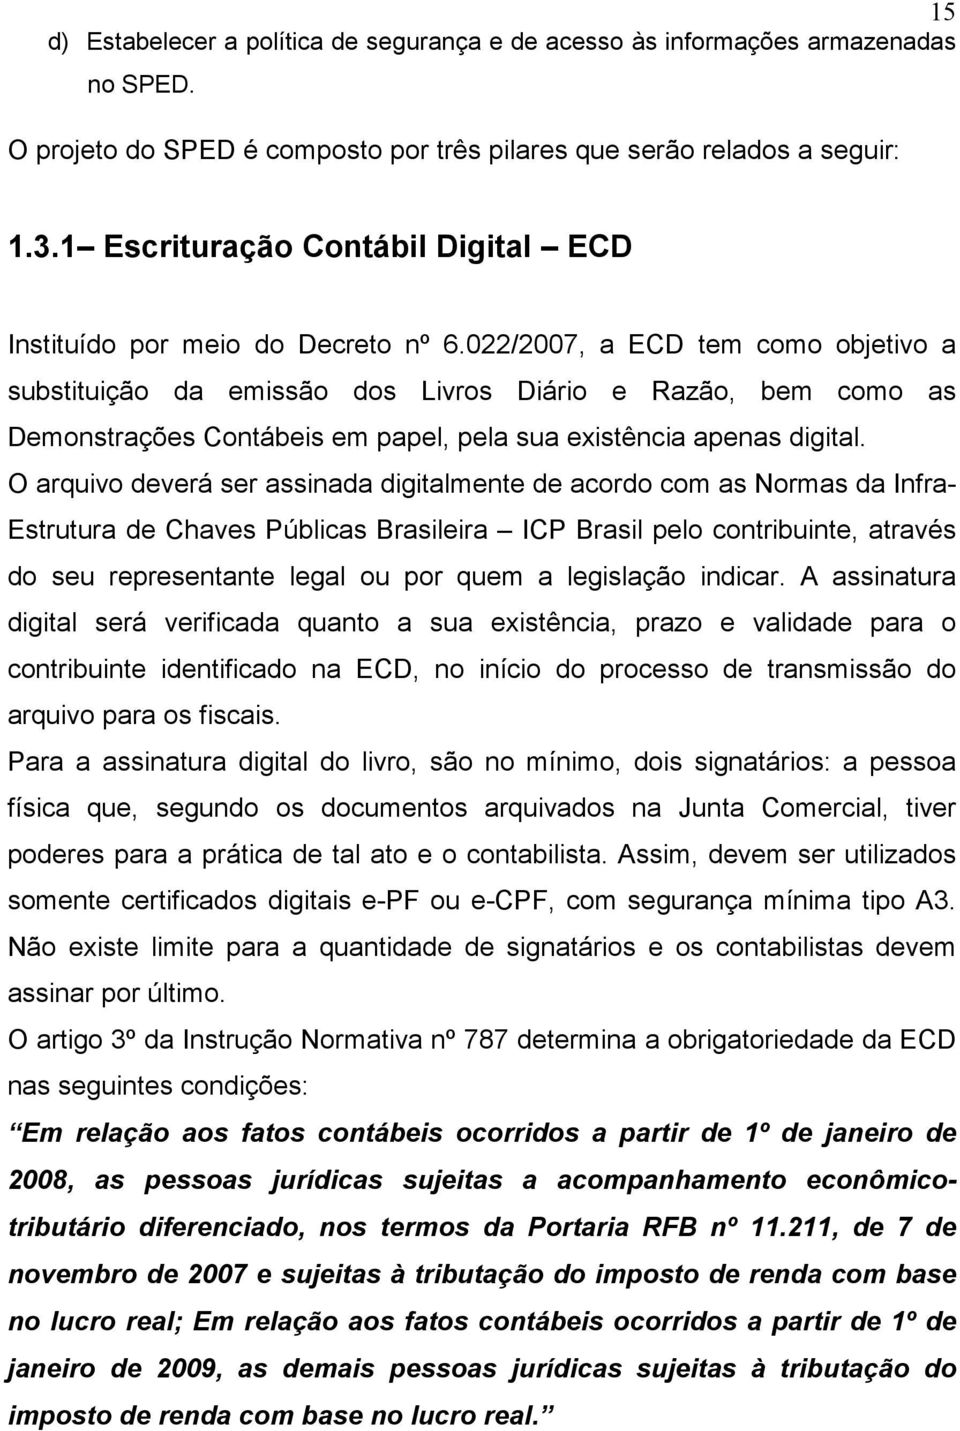 022/2007, a ECD tem como objetivo a substituição da emissão dos Livros Diário e Razão, bem como as Demonstrações Contábeis em papel, pela sua existência apenas digital.